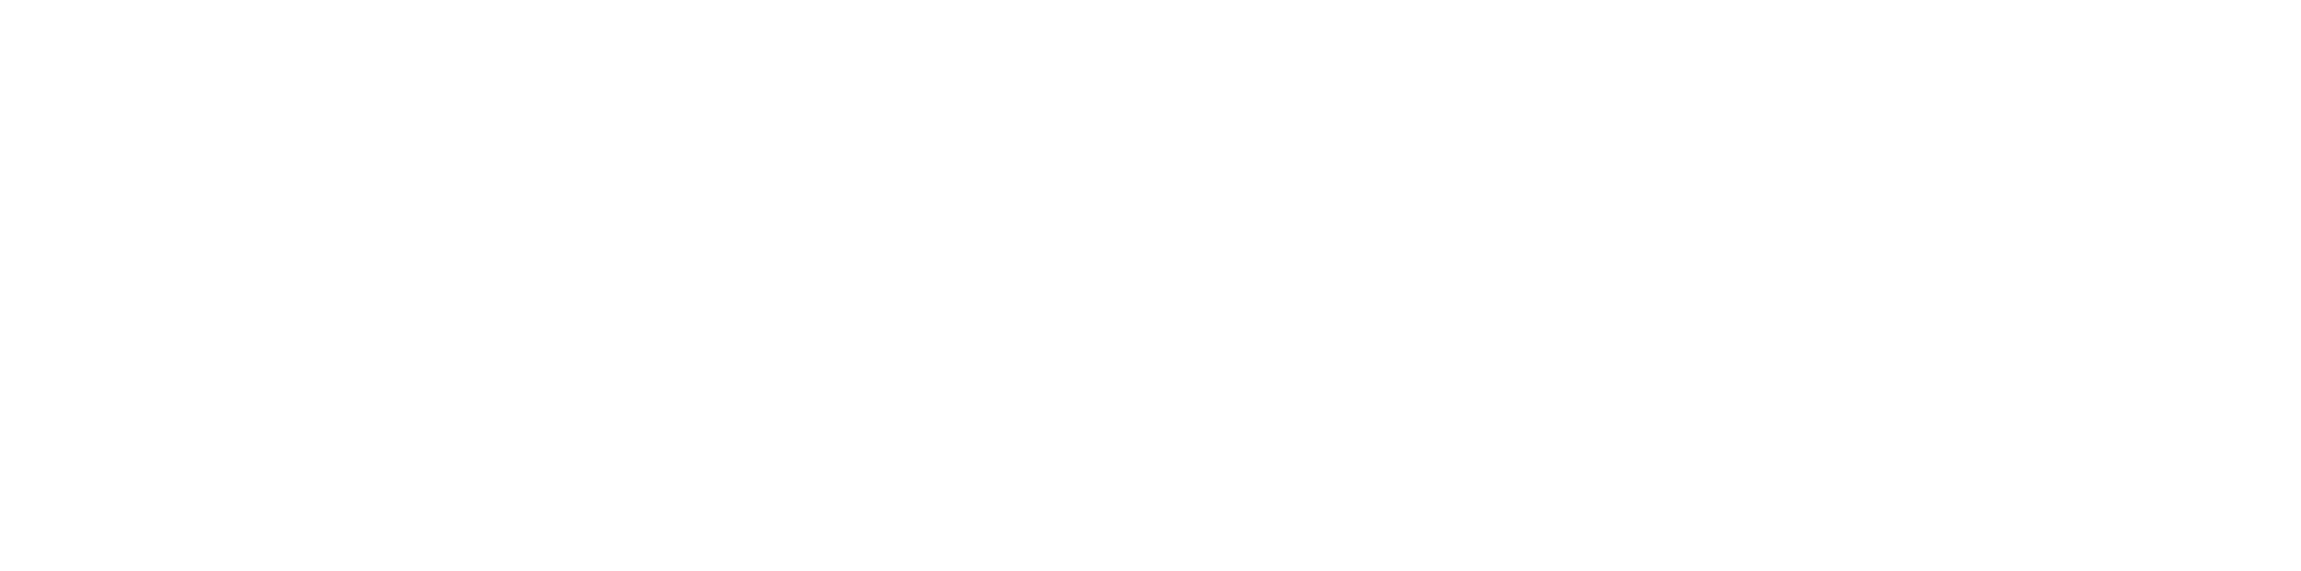 Routes to Retail White